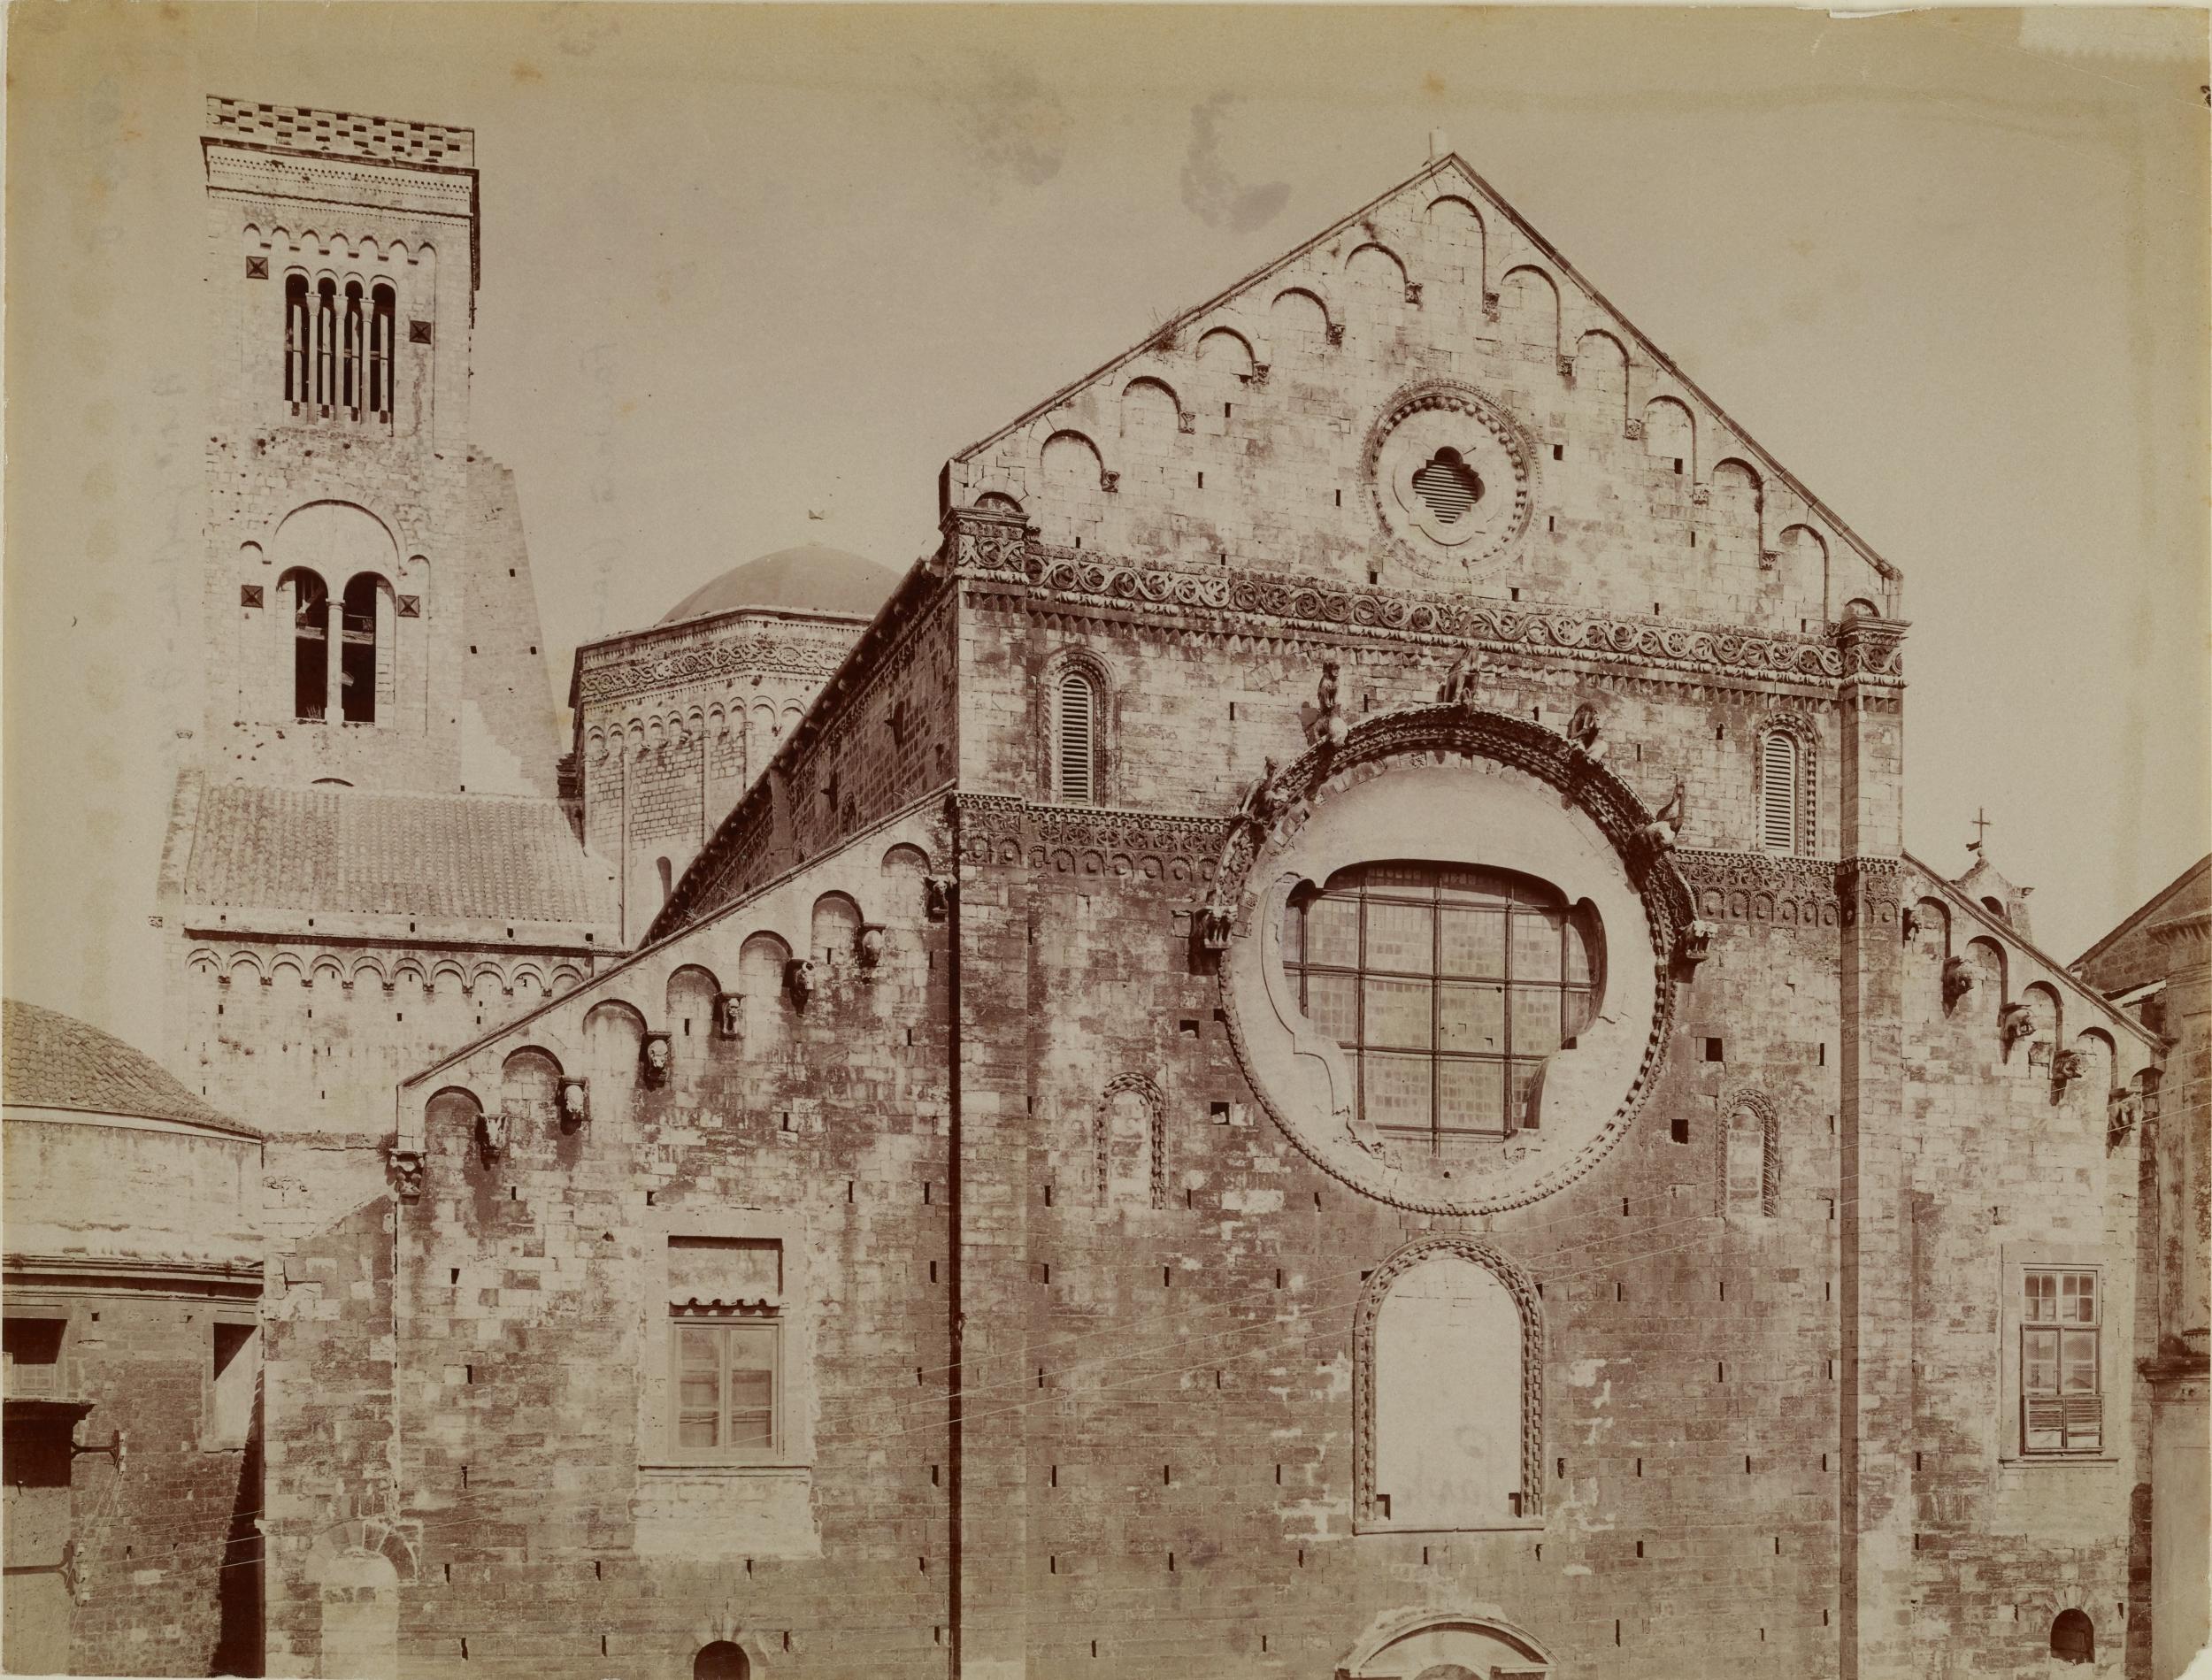 Fotografo non identificato, Bari - Cattedrale di S. Sabino, veduta d'insieme del campanile e della parte superiore della facciata, 1931 ante, albumina/carta, MPI136591